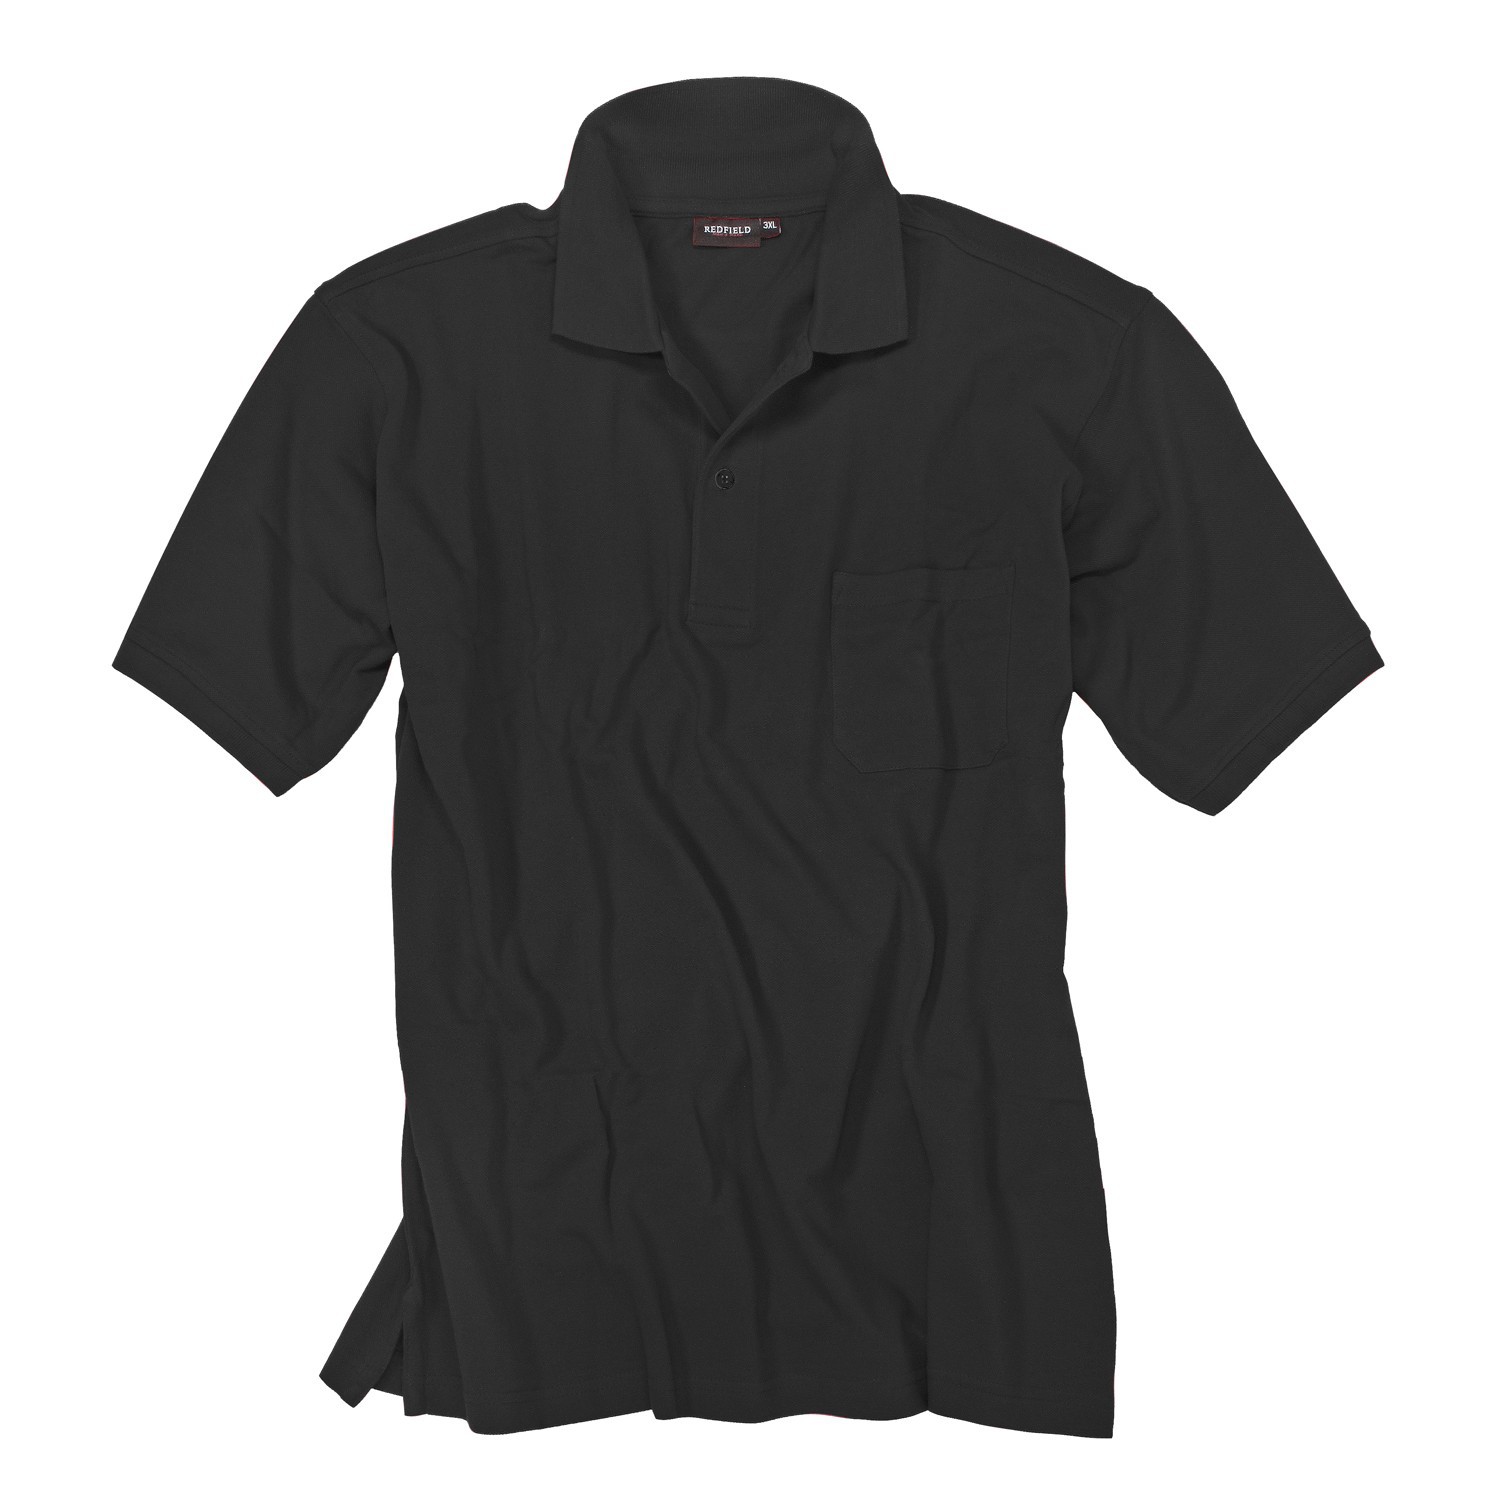 Schwarzes Polo Shirt von Redfield in großen Größen bis 8XL